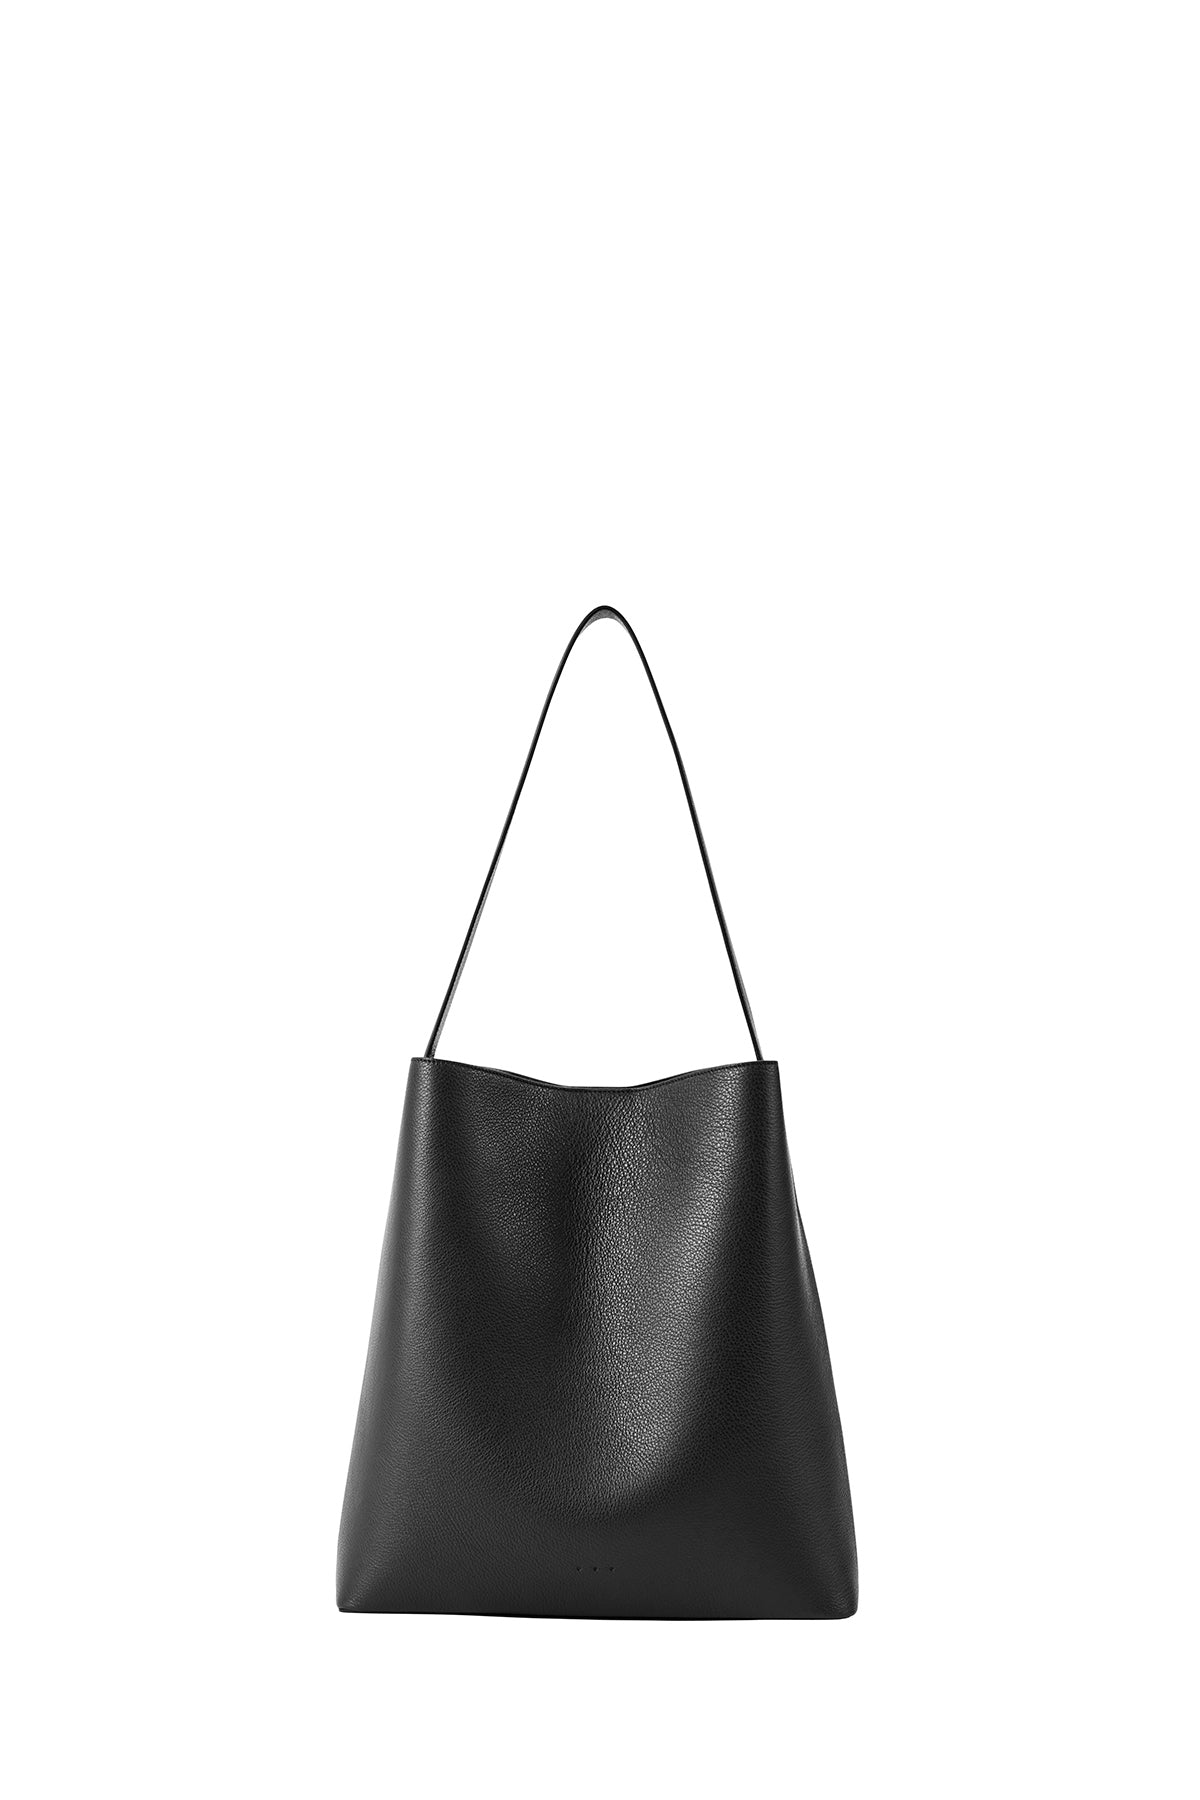 Aesther Ekme Sac Leather Shoulder Bag - Black